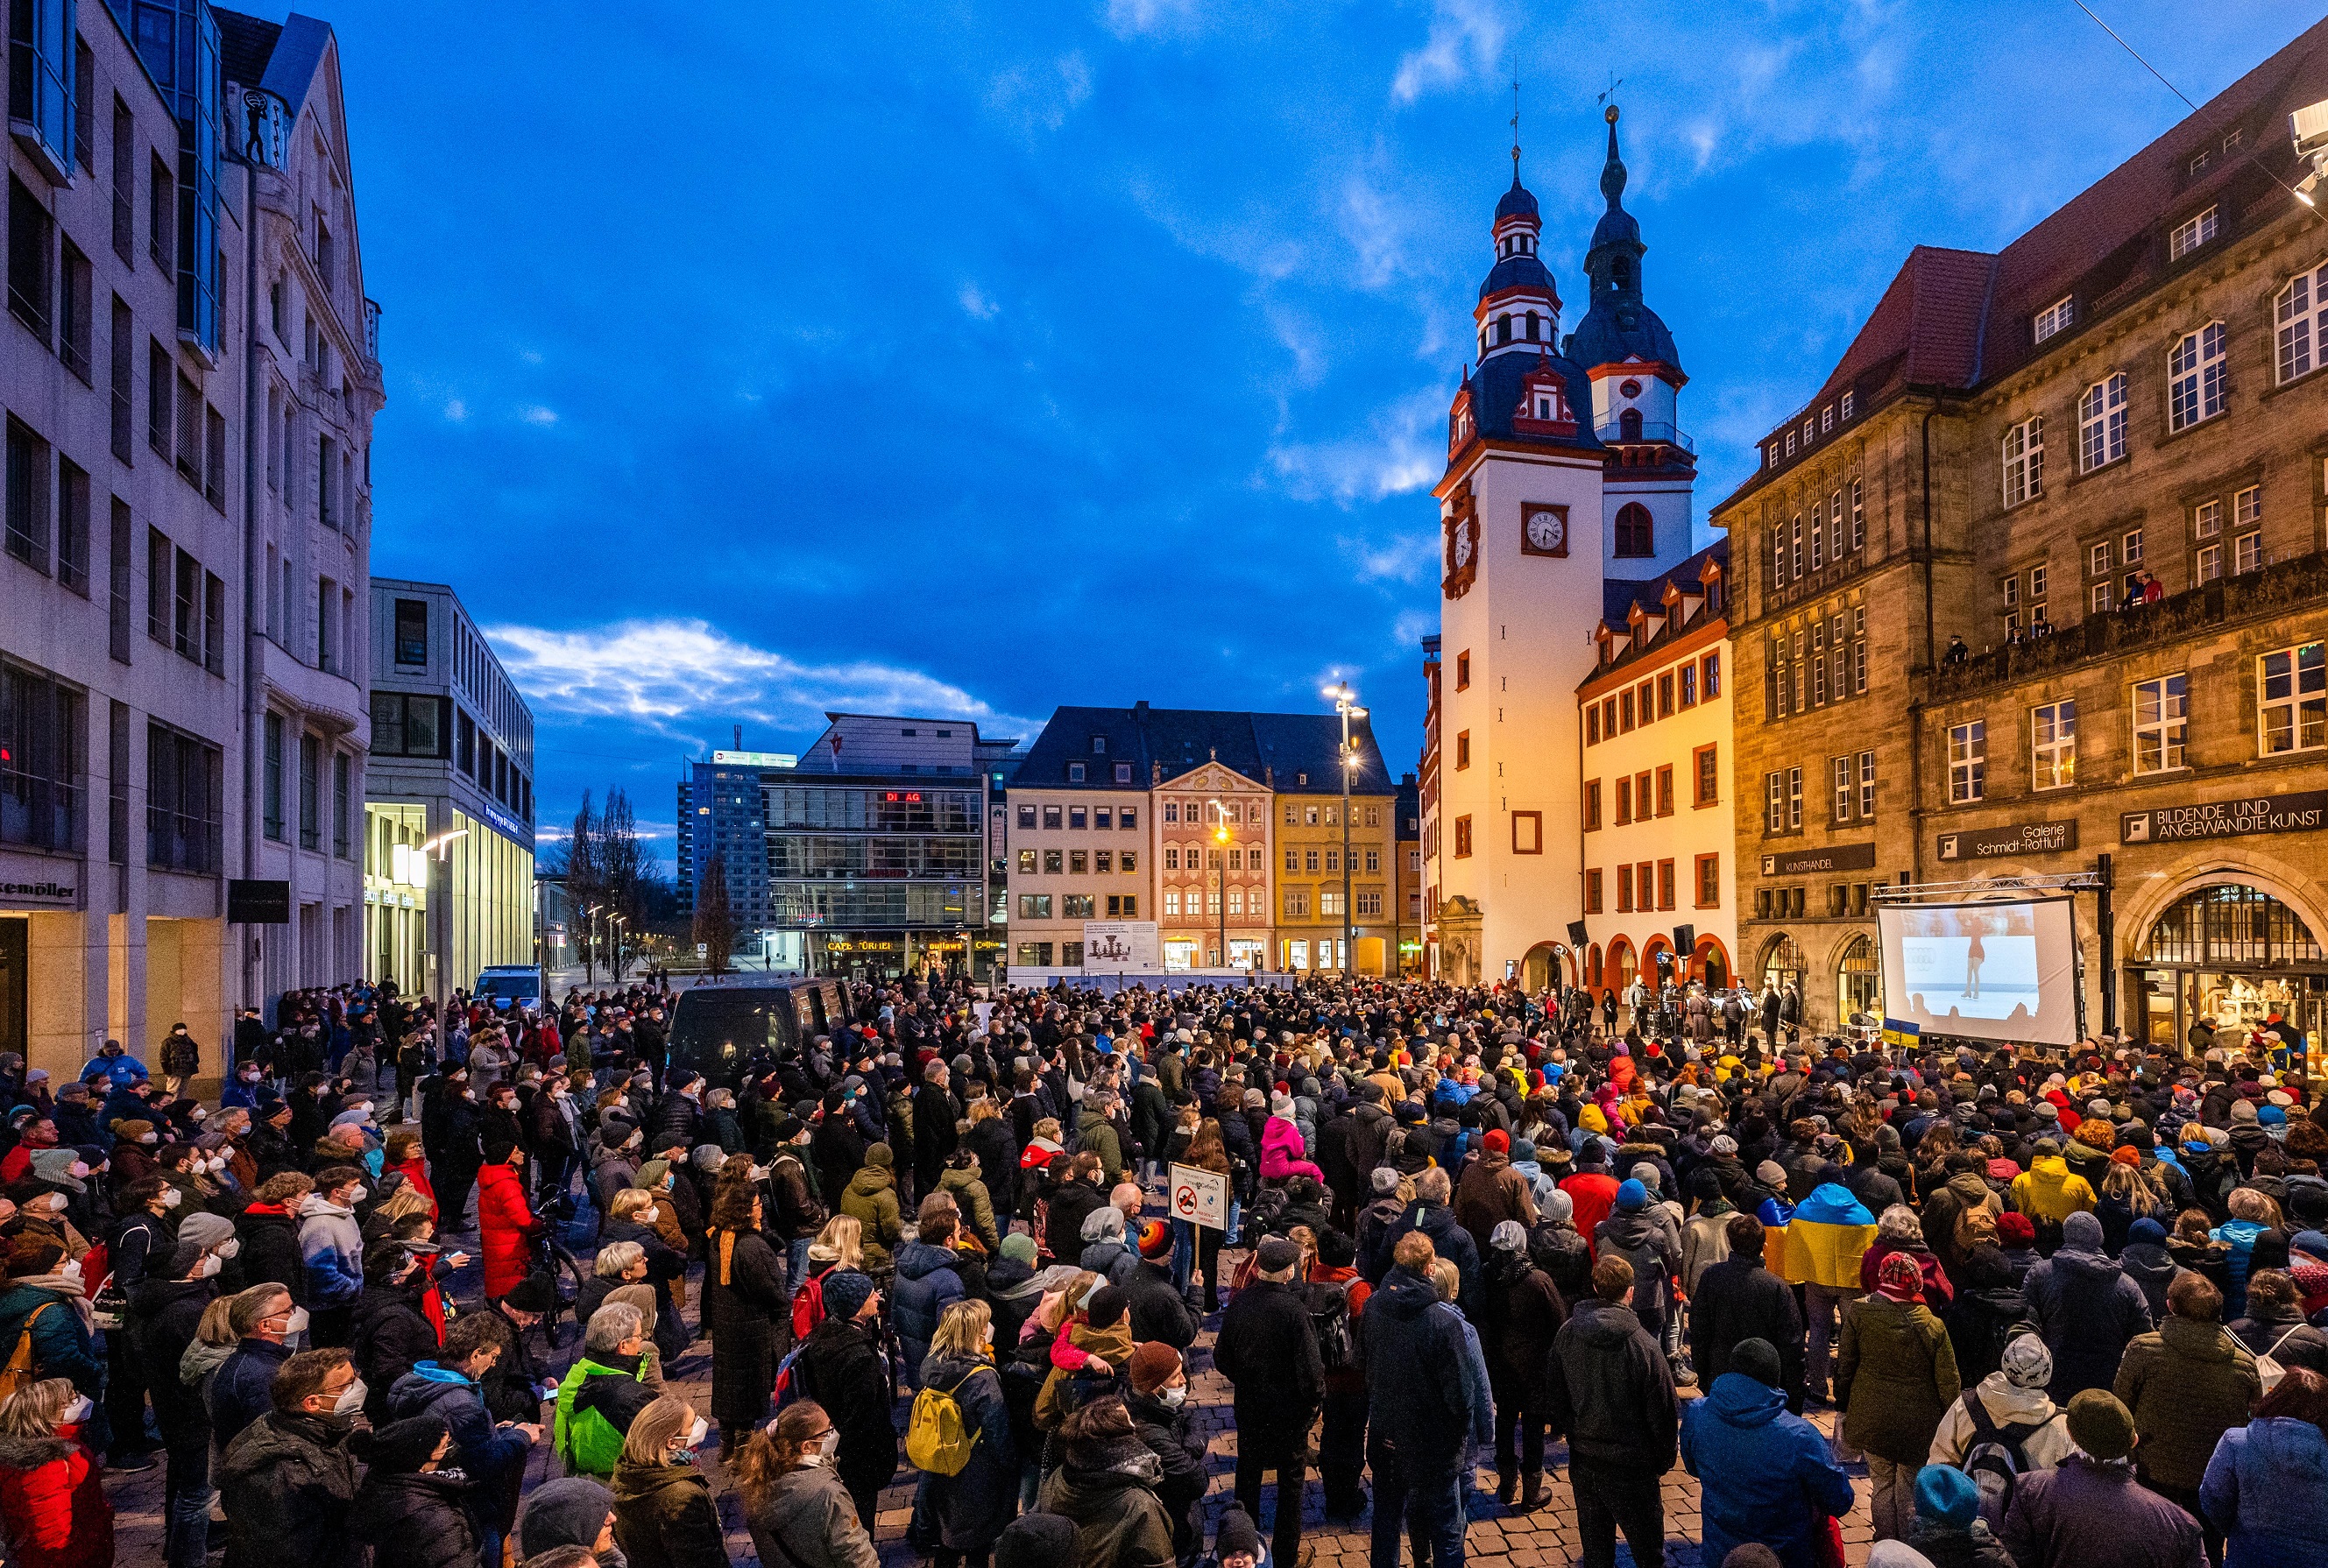 Tausende Chemnitzer:innen haben am heutigen 5. März unter dem Motto „Miteinander statt Nebeneinander“ mit Veranstaltungen und Aktionen an die Bombardierung der Stadt vor 77 Jahren und an die Opfer des Zweiten Weltkrieges erinnert.